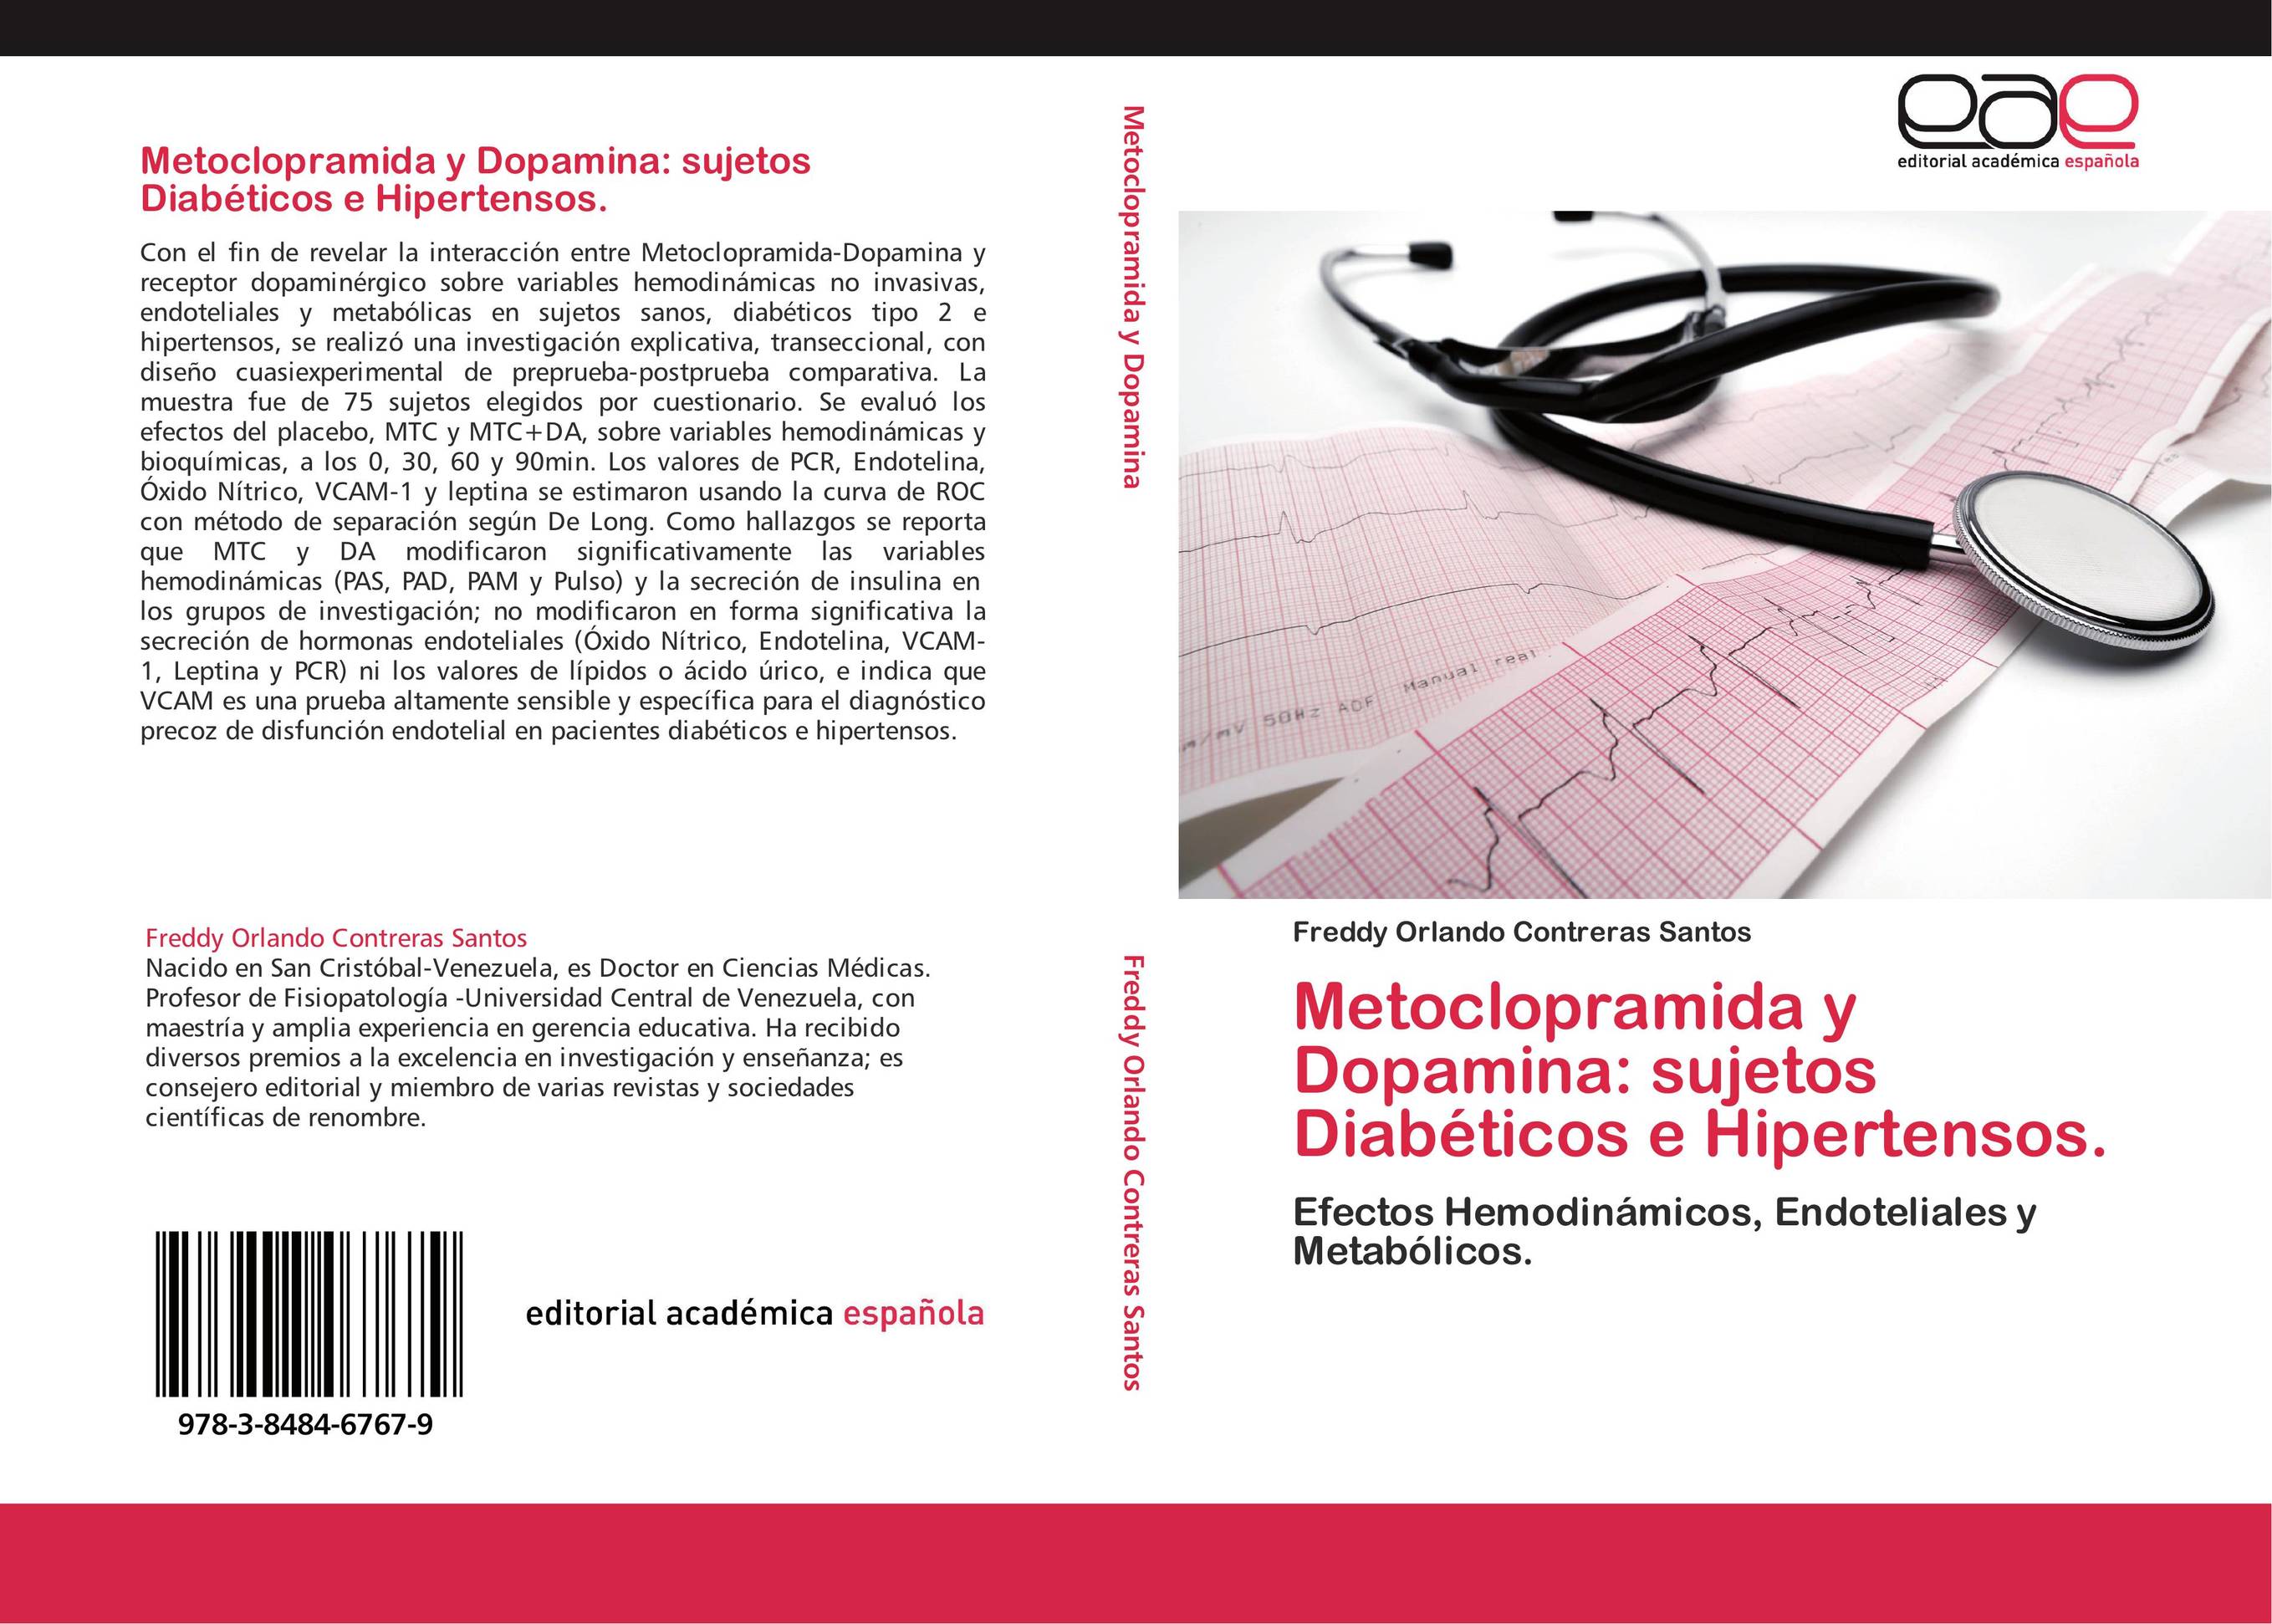 Metoclopramida y Dopamina: sujetos Diabéticos e Hipertensos.